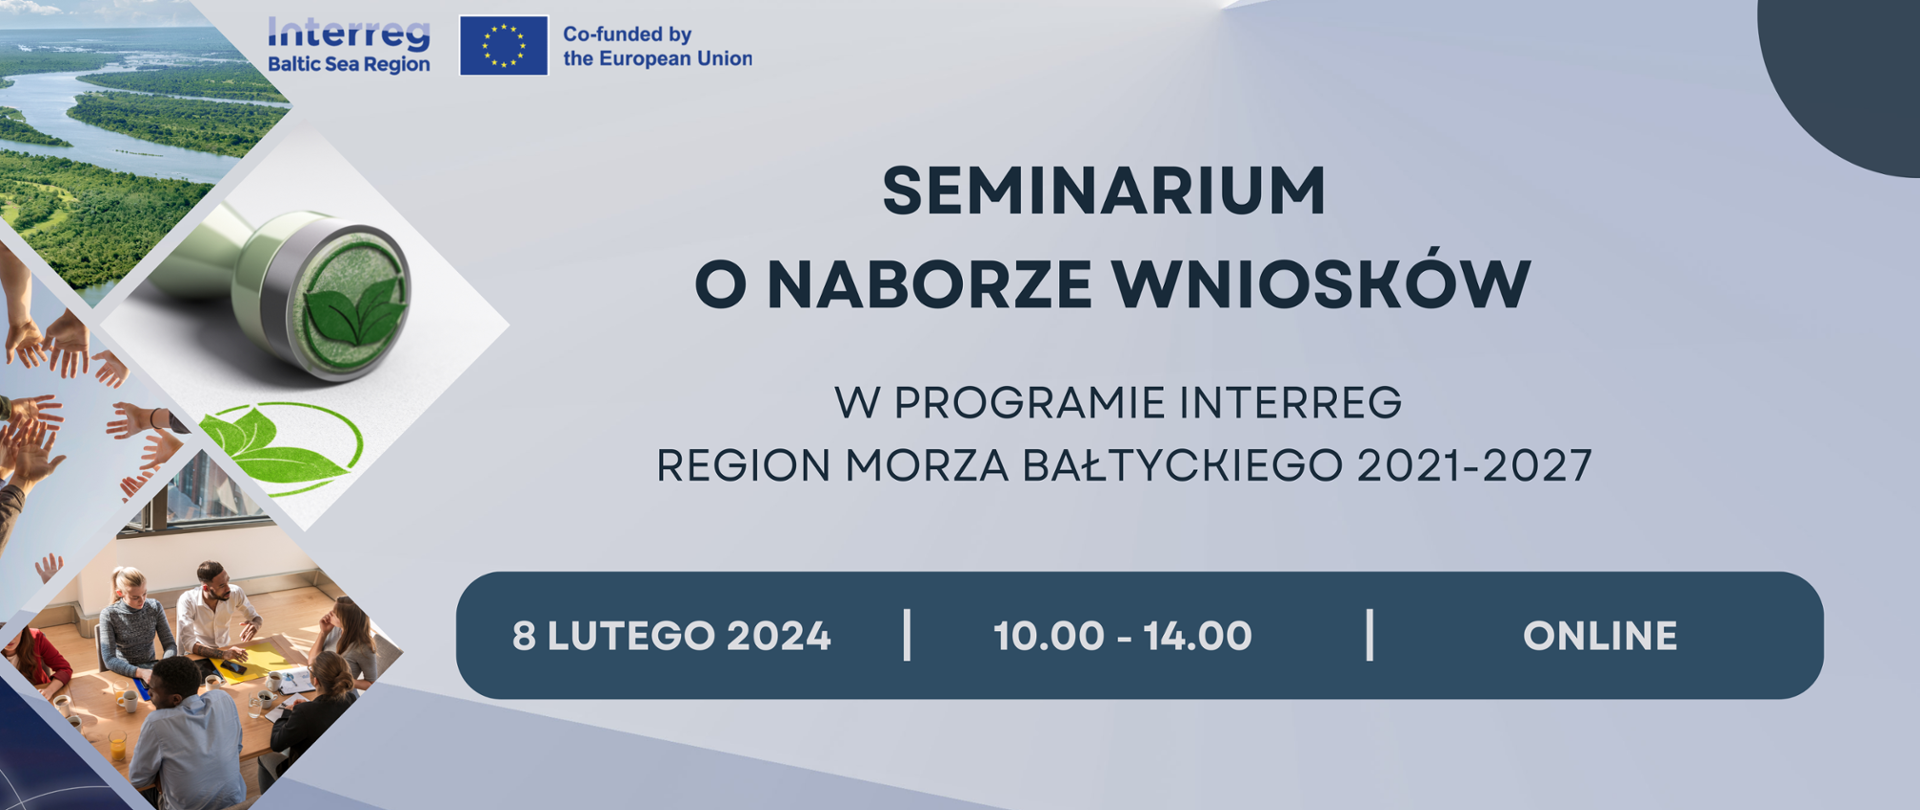 Program Interreg Region Morza Bałtyckiego 2021-2027. Seminarium o naborze wniosków odbędzie się online, 8 lutego 2024 roku w godzinach 10:00-14:00. Więcej informacji w artykule. 